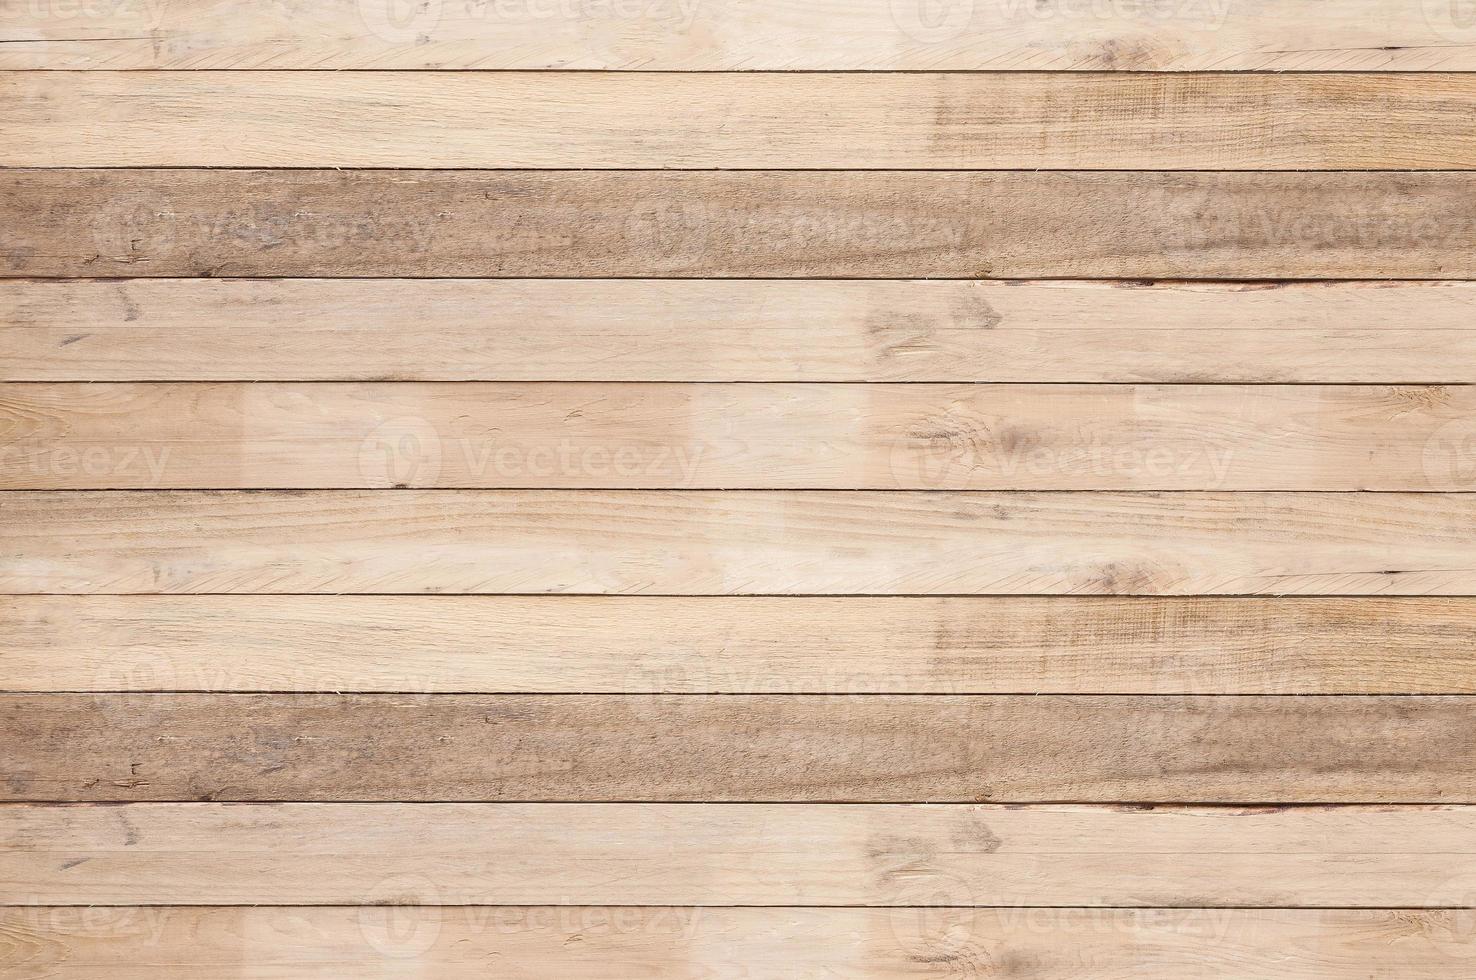 gammal trä planka vägg bakgrund, gammal trä- ojämn textur mönster bakgrund för bakgrund foto